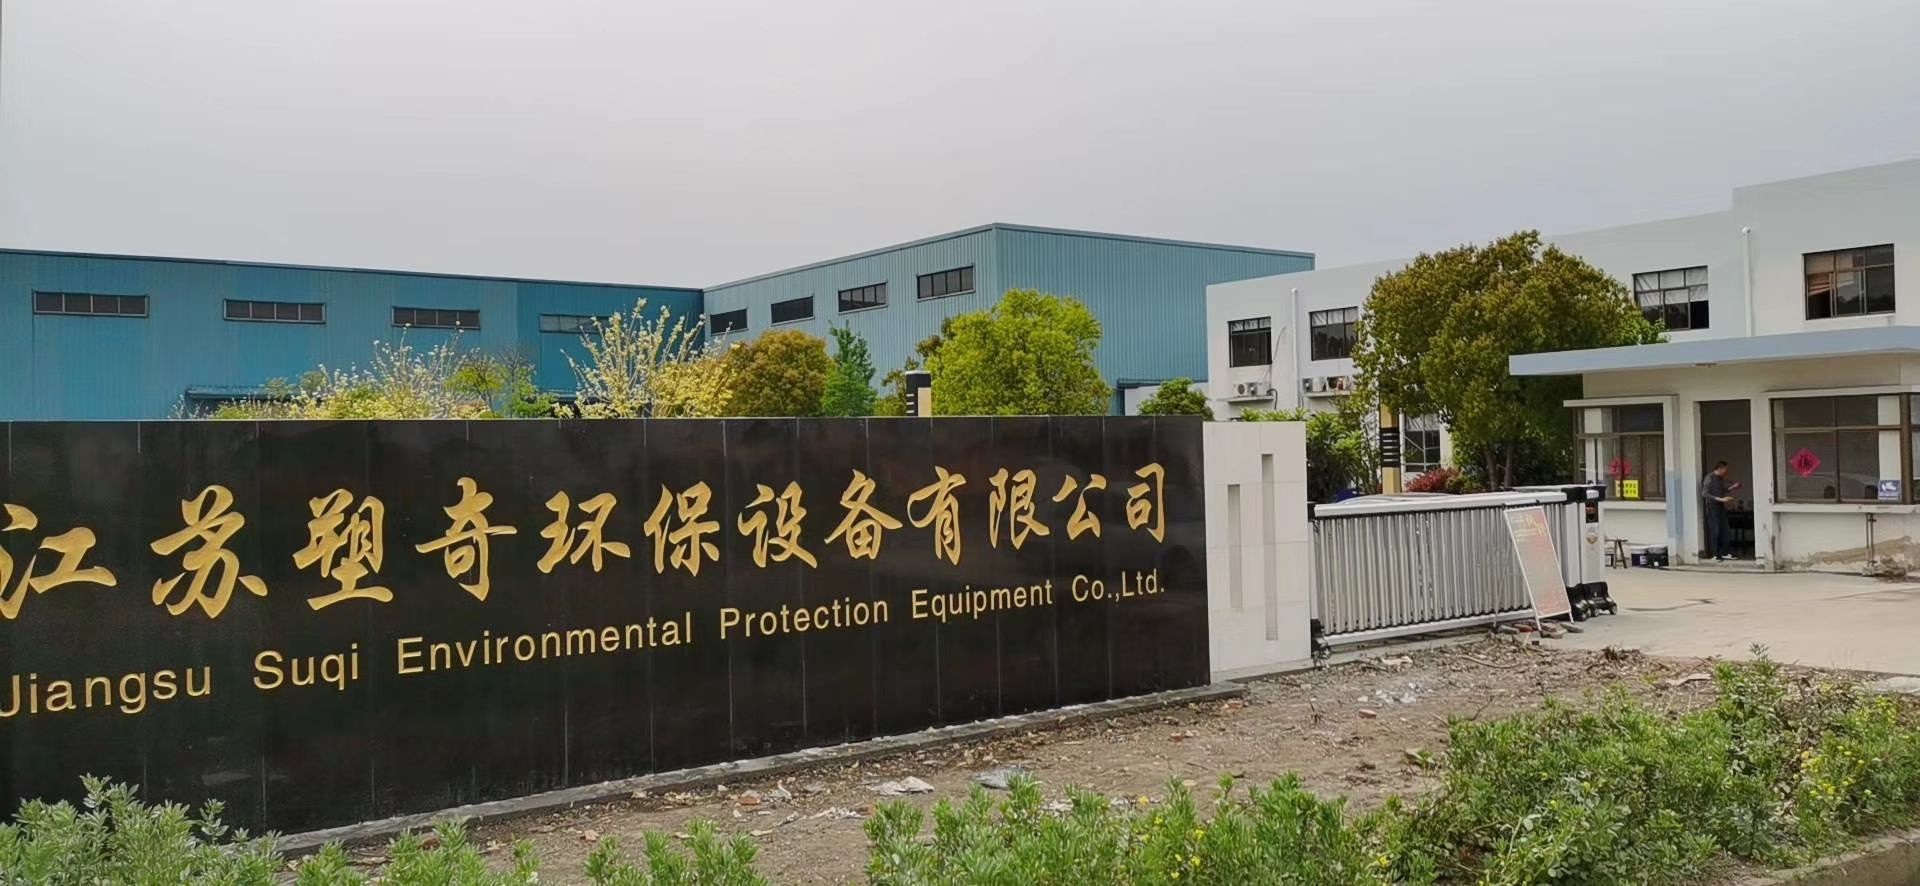 Jiangsu Suqi Environmental Protection Equipment Co., Ltd